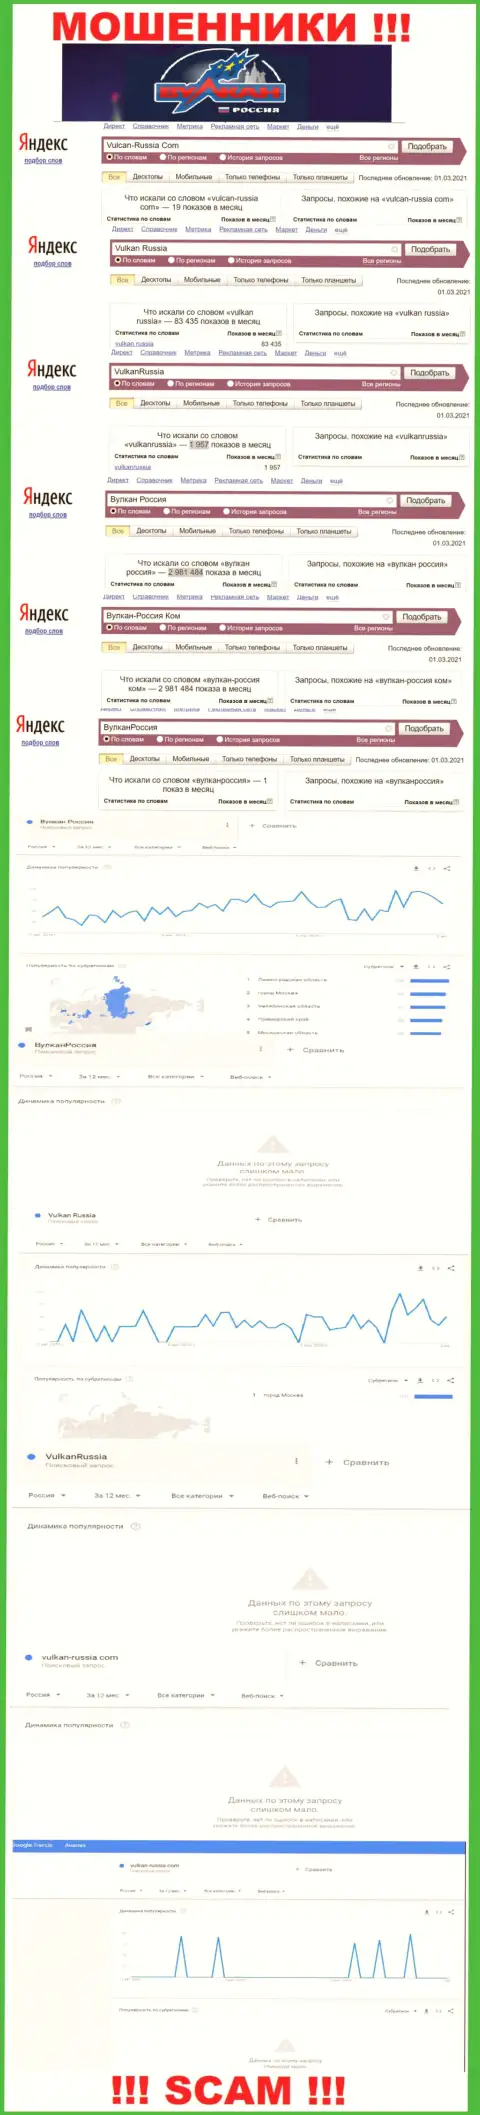 Статистические данные числа обзоров данных об жуликах Вулкан Россия в глобальной сети internet